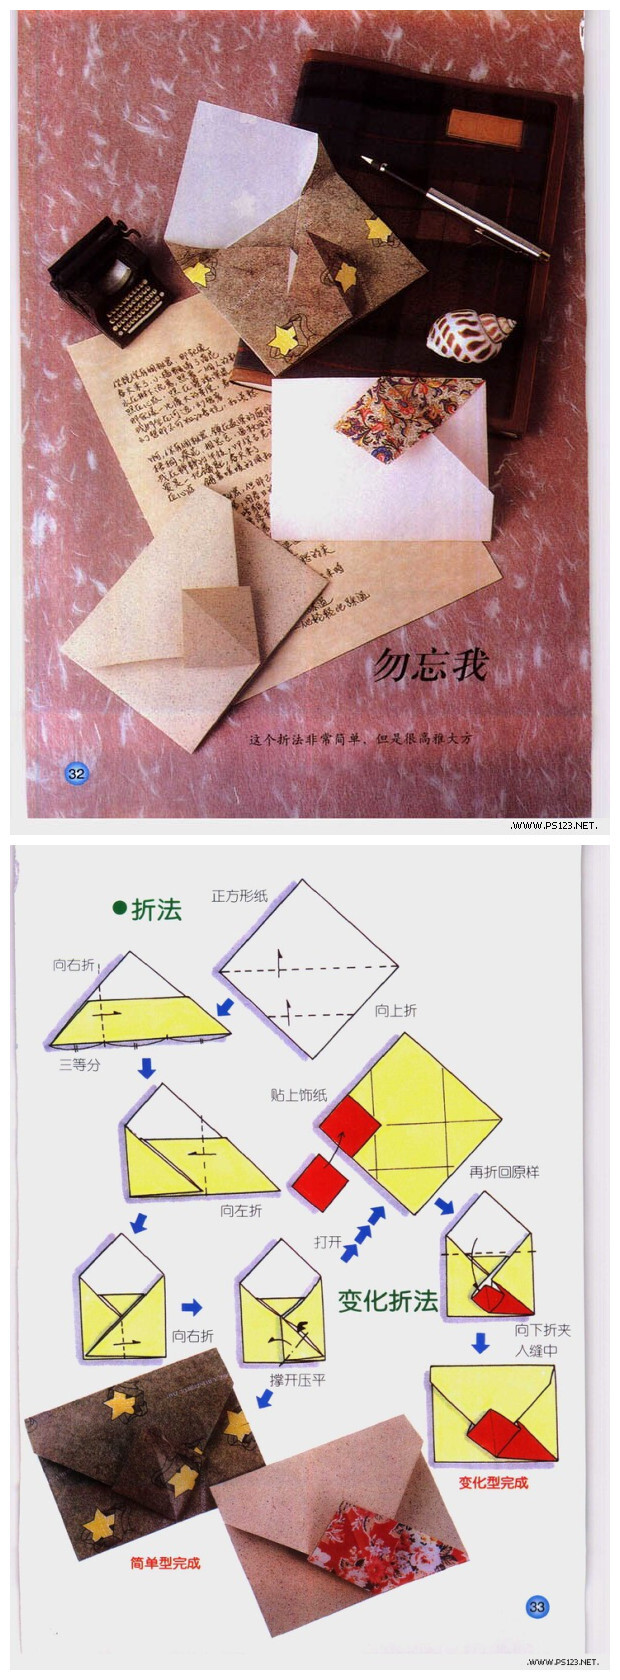 信纸的折叠方法 图解图片